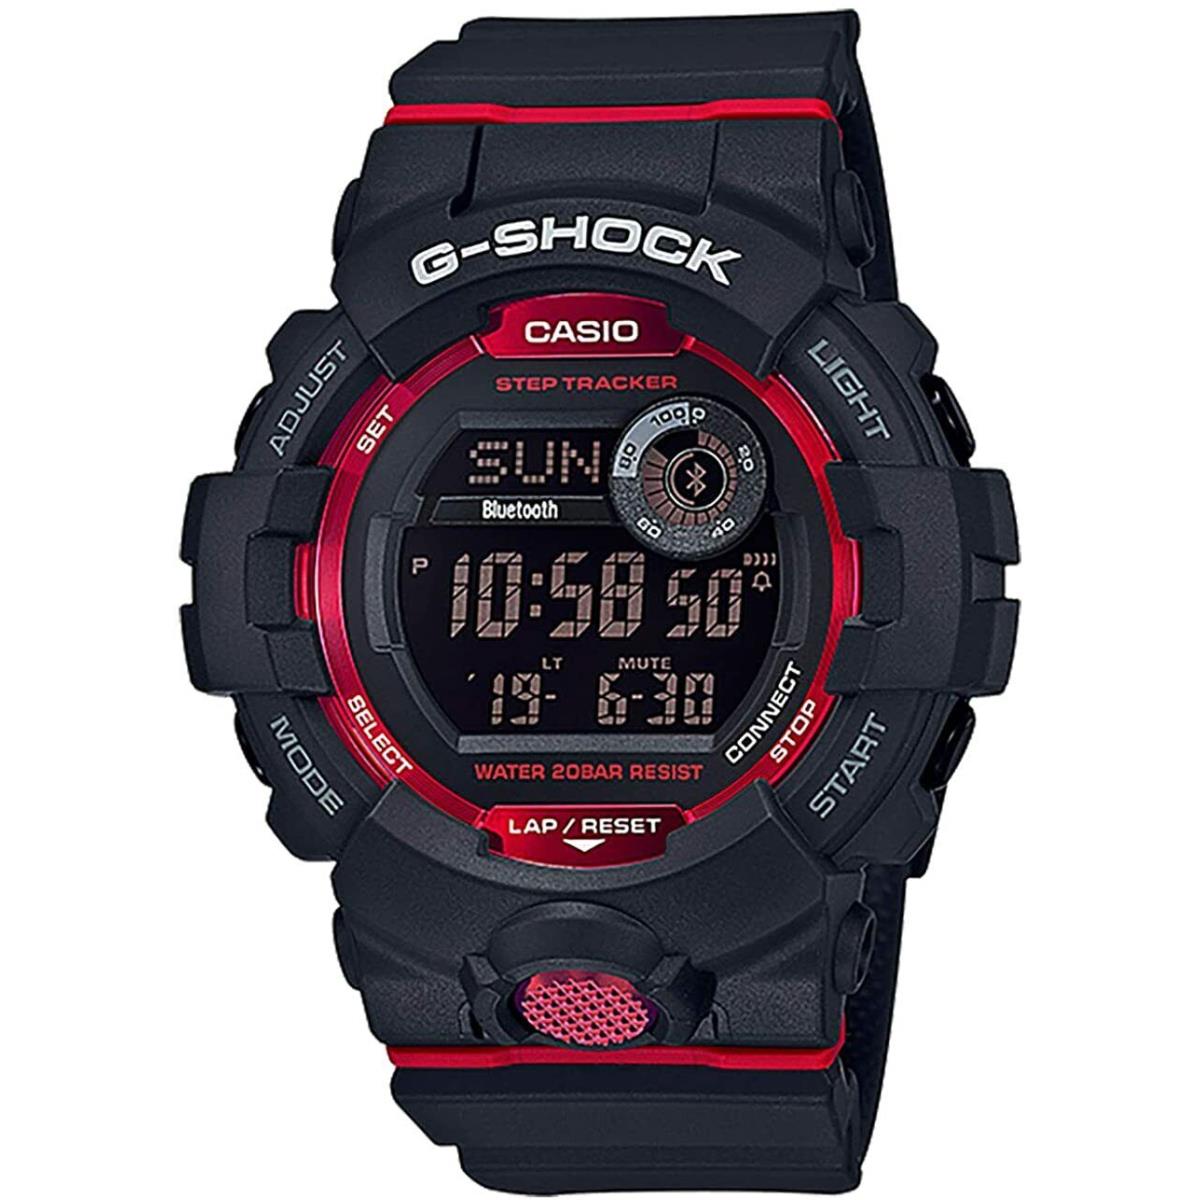 Casio G-shock Digital Bluetooth Watch Black / Red Resin GBD-800-1 / GBD800-1 - Band: Black